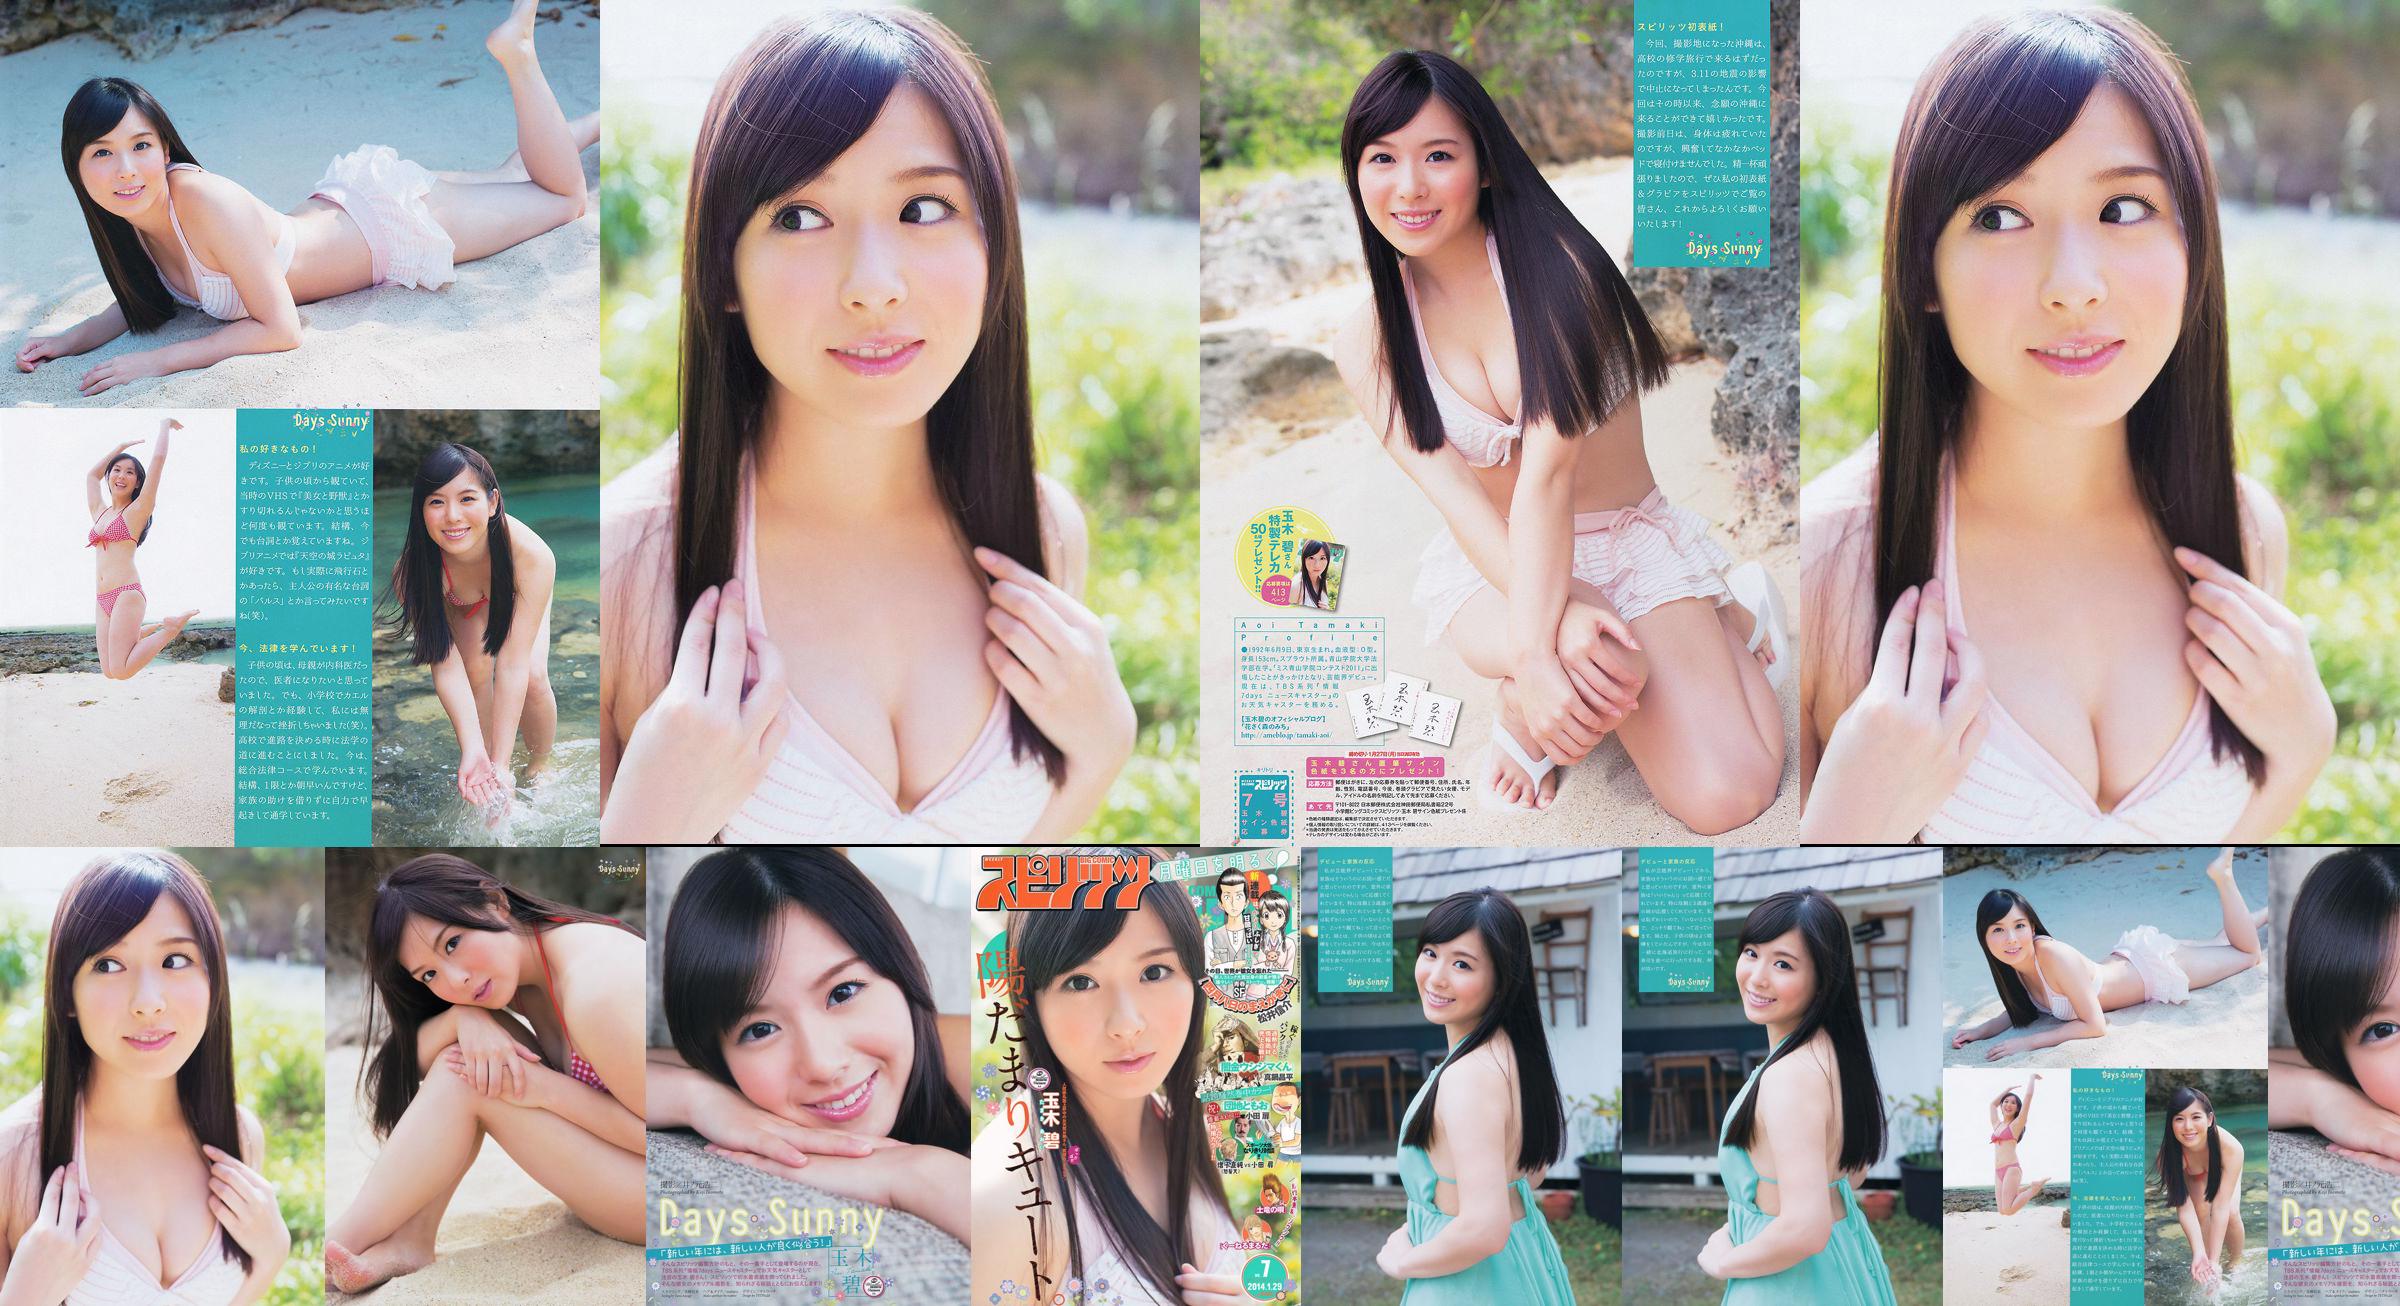 [Weekly Big Comic Spirits] Tamakibi 2014 No.07 Photo Magazine No.17e91f Page 1